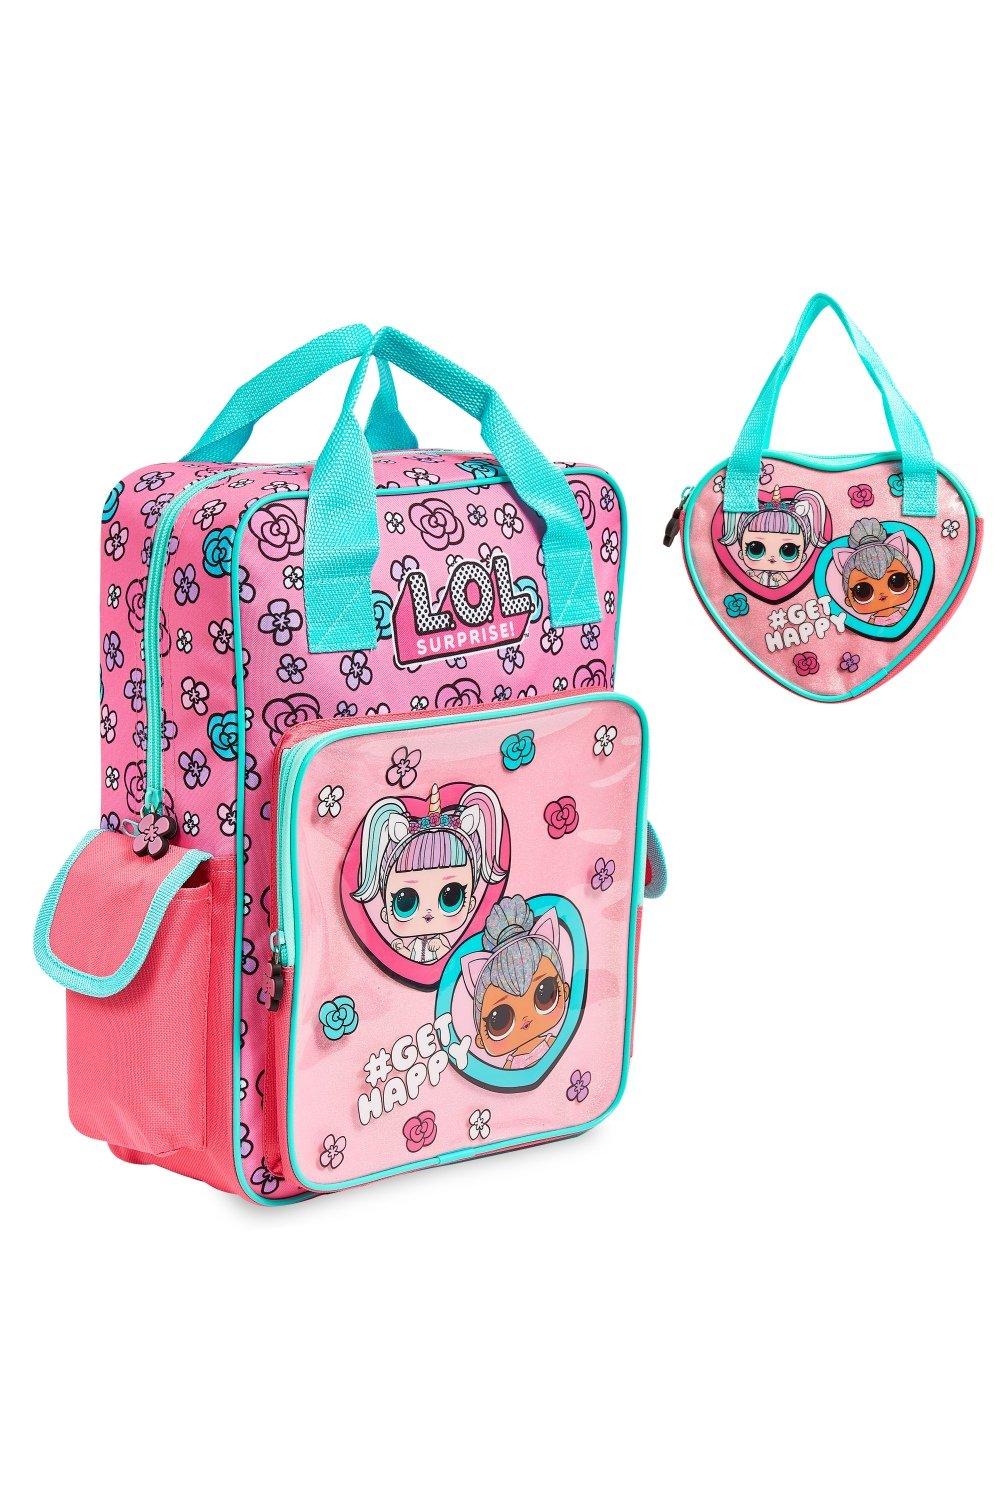 Сумочка и рюкзак Unicorn and Kitty Queen L.O.L. Surprise, розовый новый рюкзак с единорогом для девочек школьные ранцы розового цвета для принцесс детские ранцы ранцы для детского сада школьные ранцы